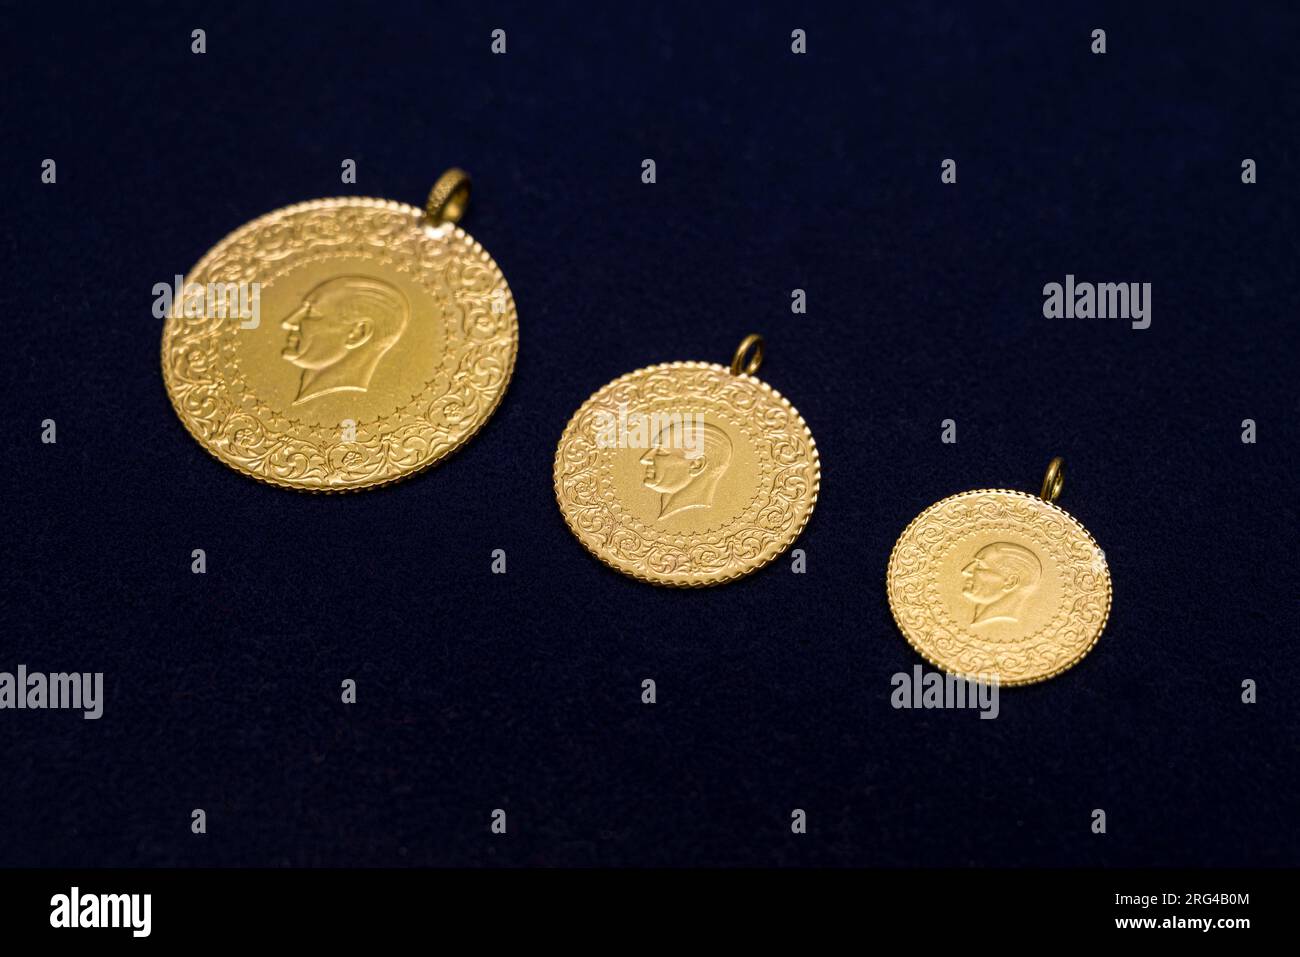 Monete d'oro turche complete, metà e un quarto affiancate su sfondo blu scuro Foto Stock